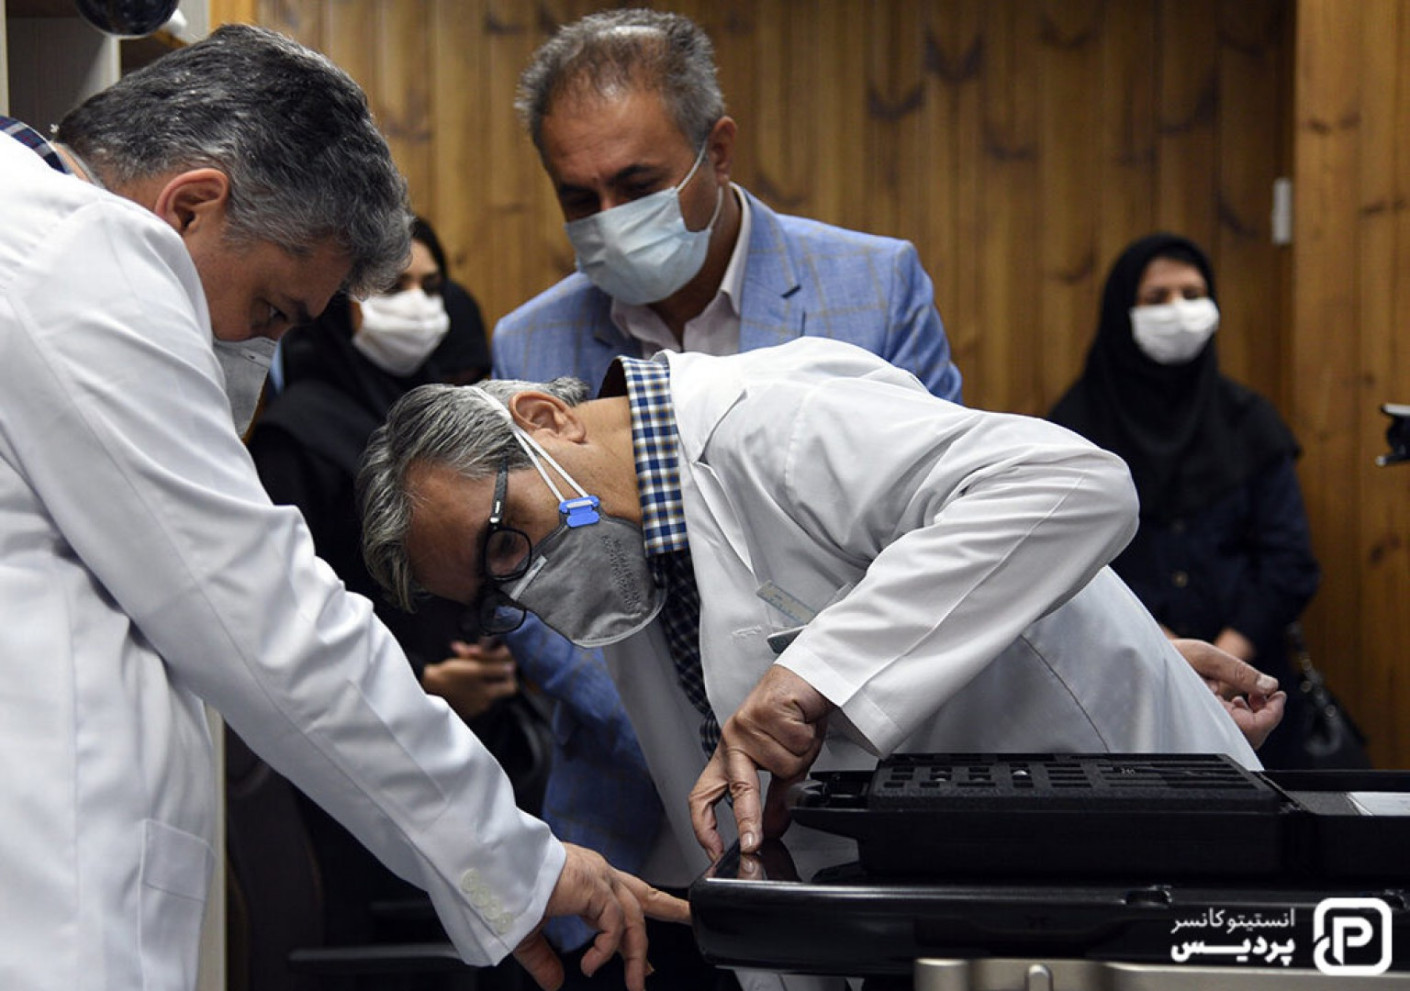 درمان سرطان به روش رادیوتراپی با تکنیک IMRT در کلینیک پردیس شیراز